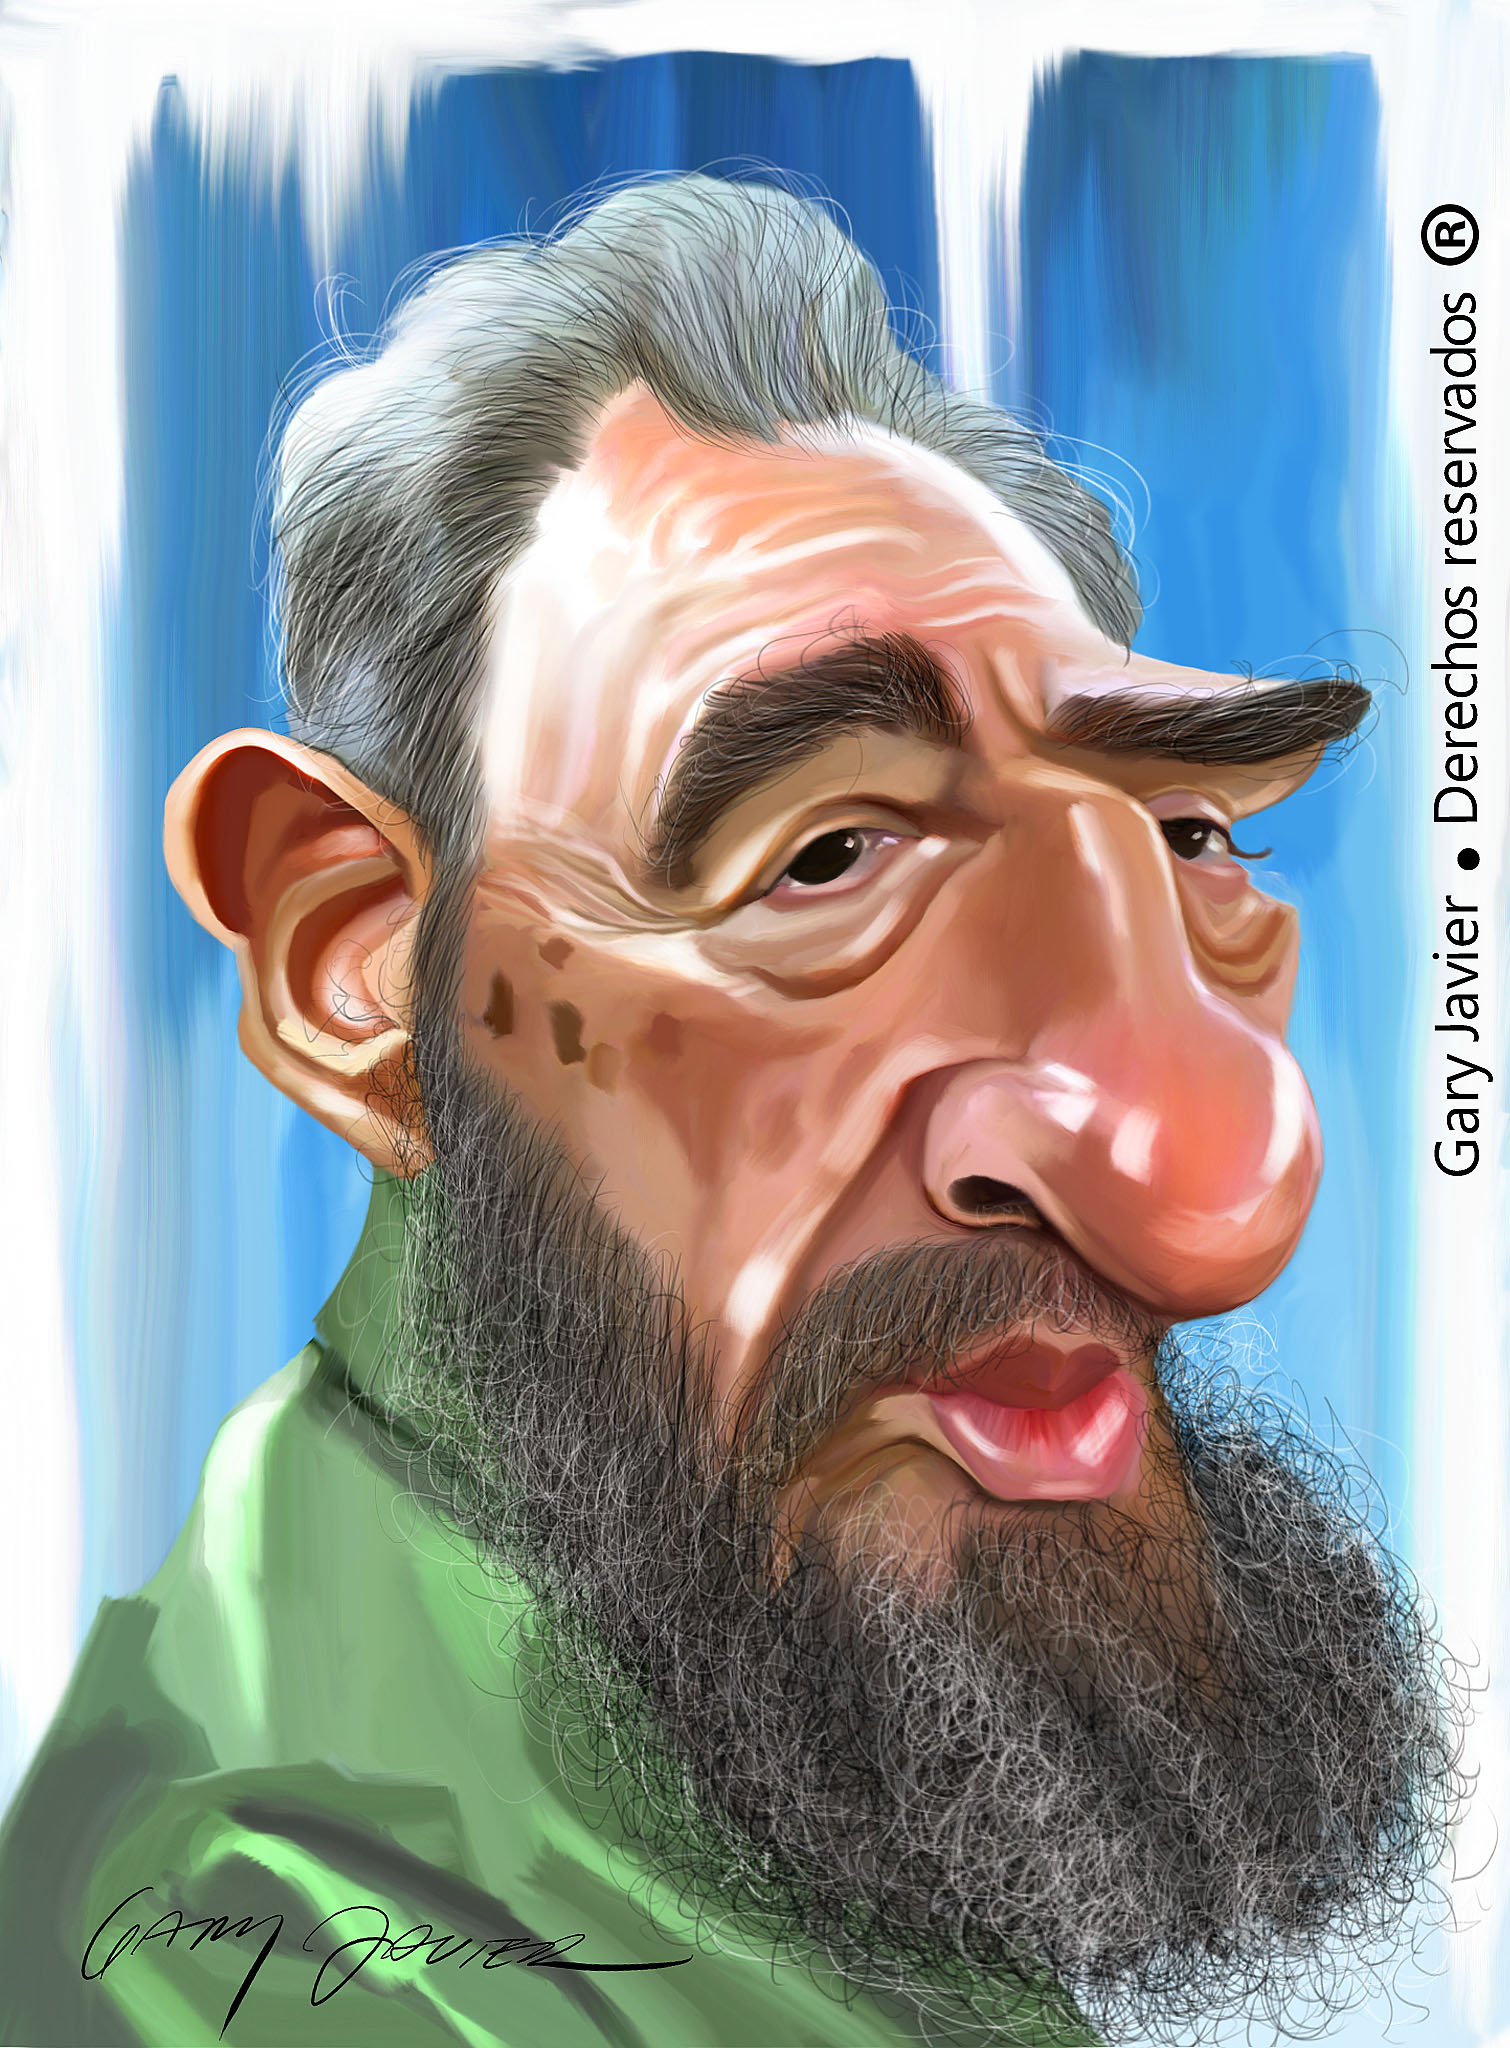 Gary Javier's Fidel Castro